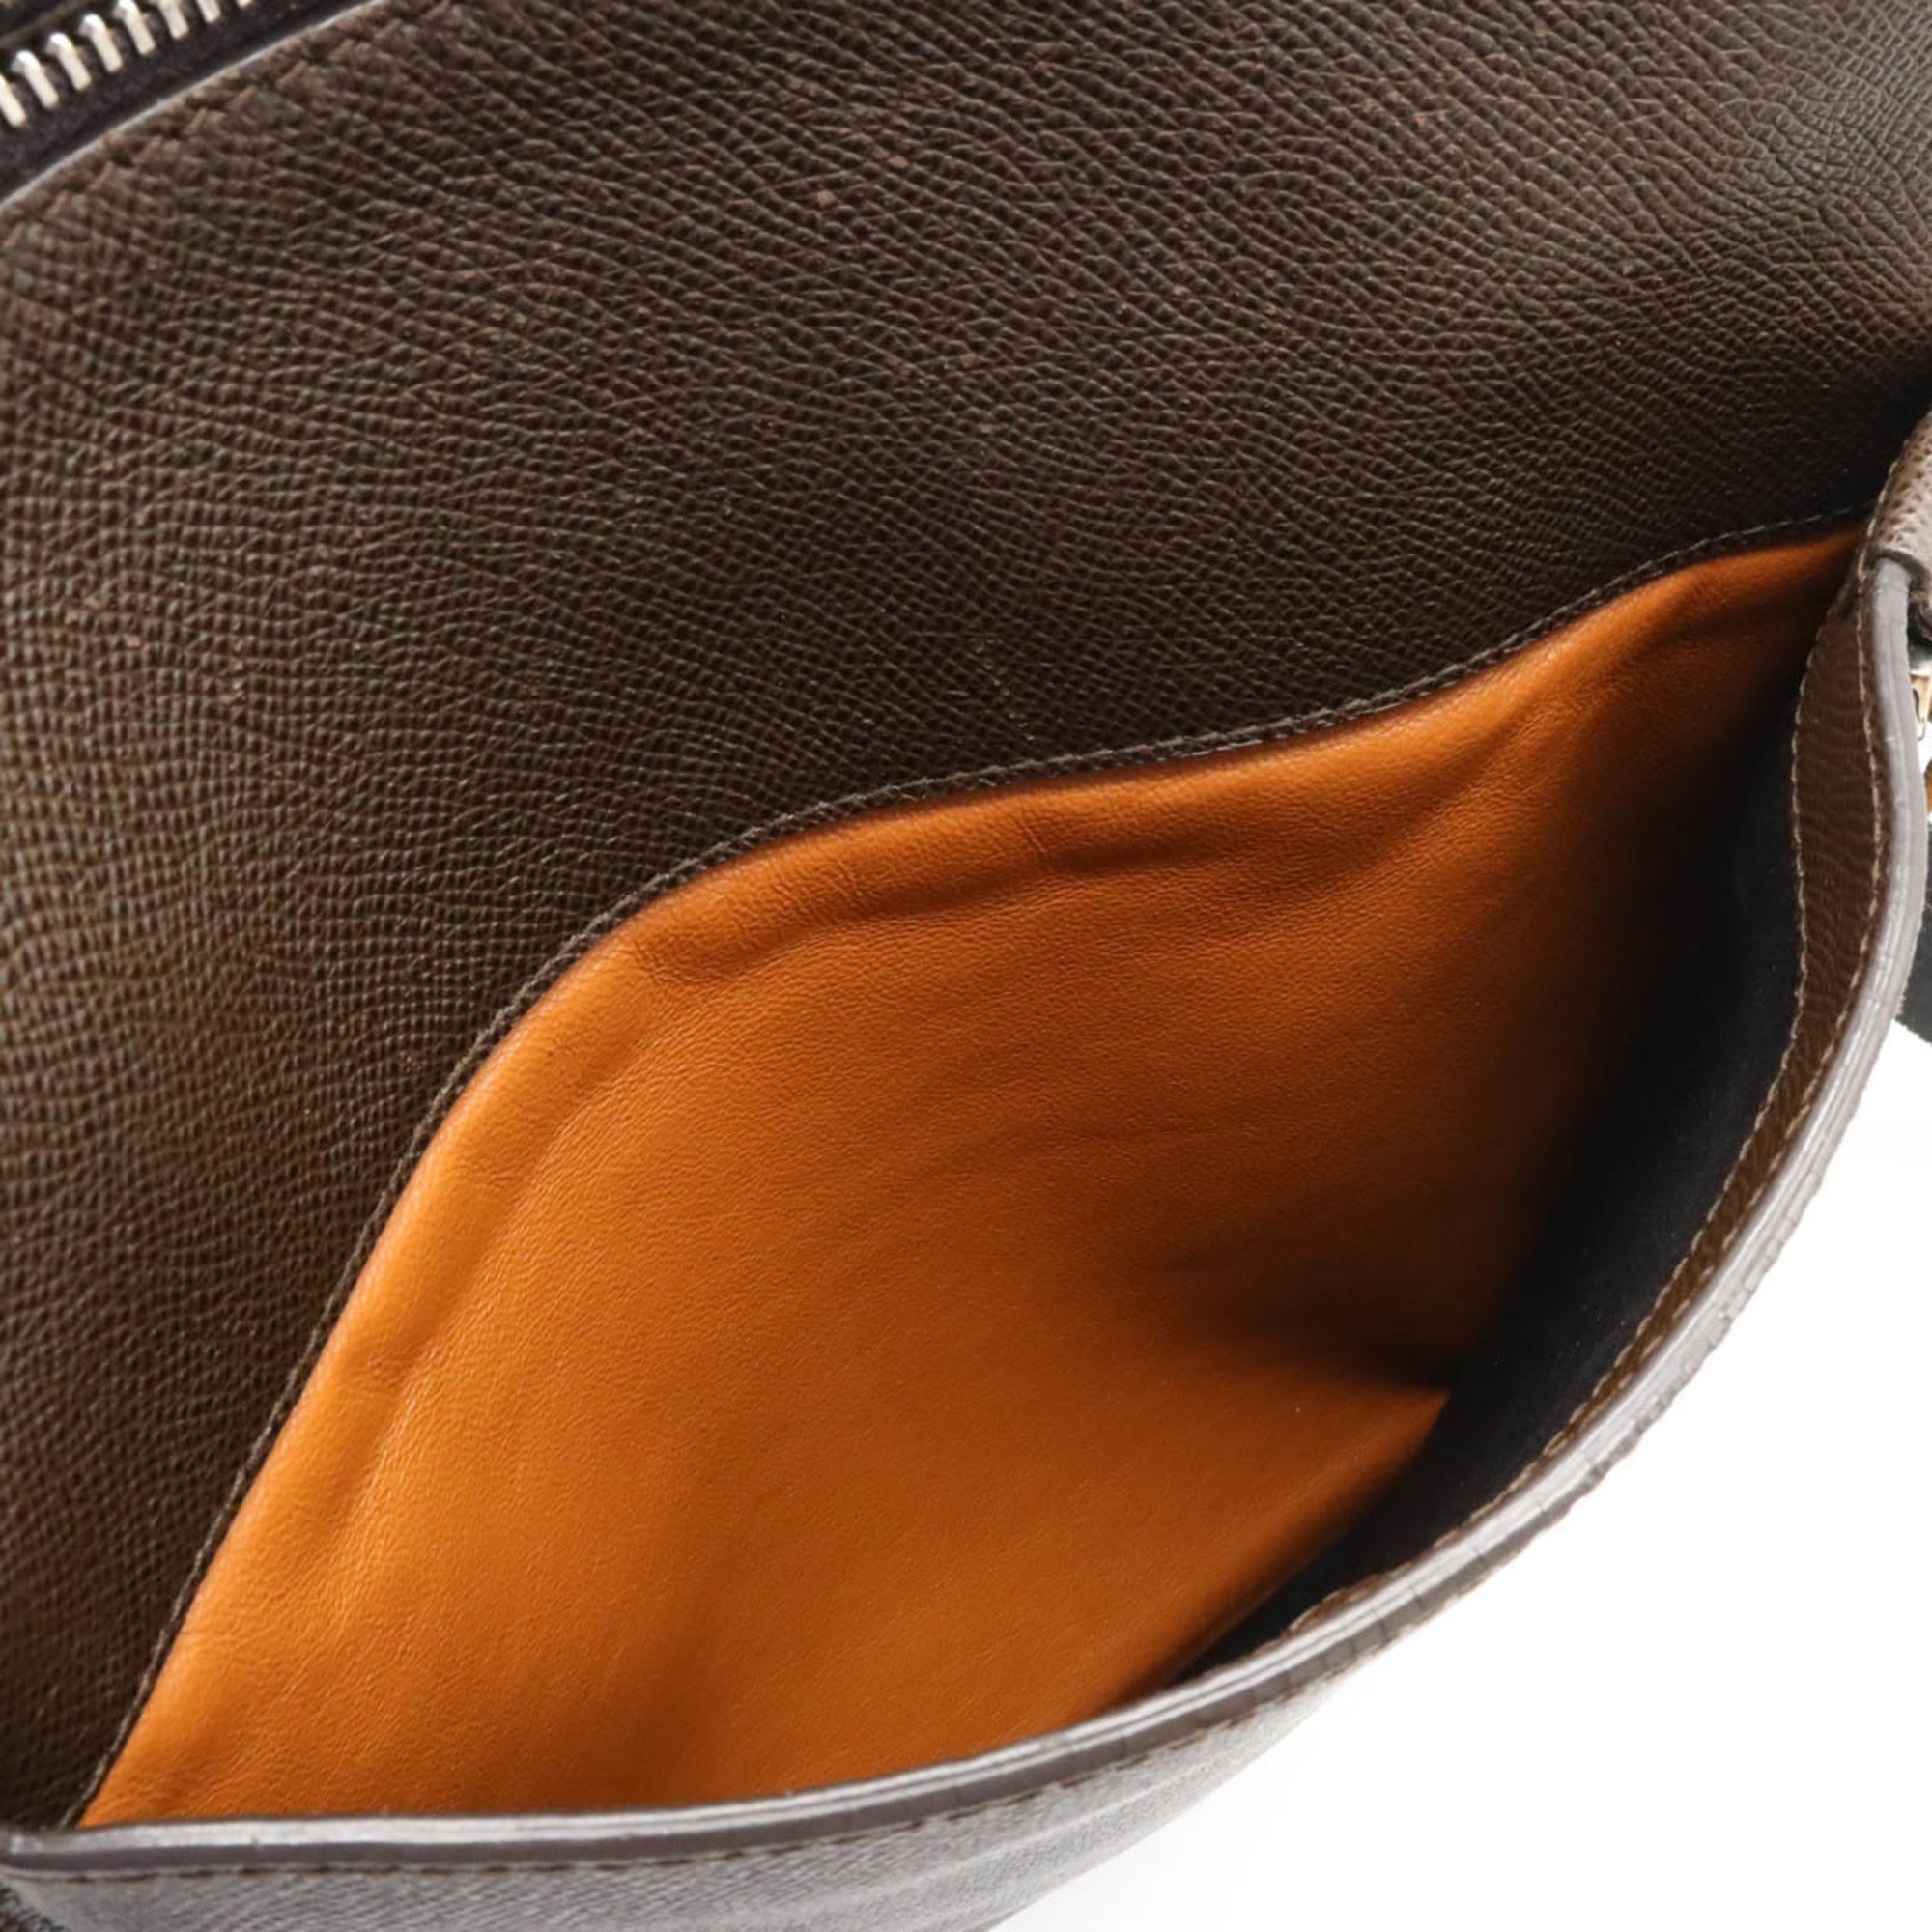 BVLGARI Bulgari Man Shoulder Bag Embossed Leather Dark Brown 37628